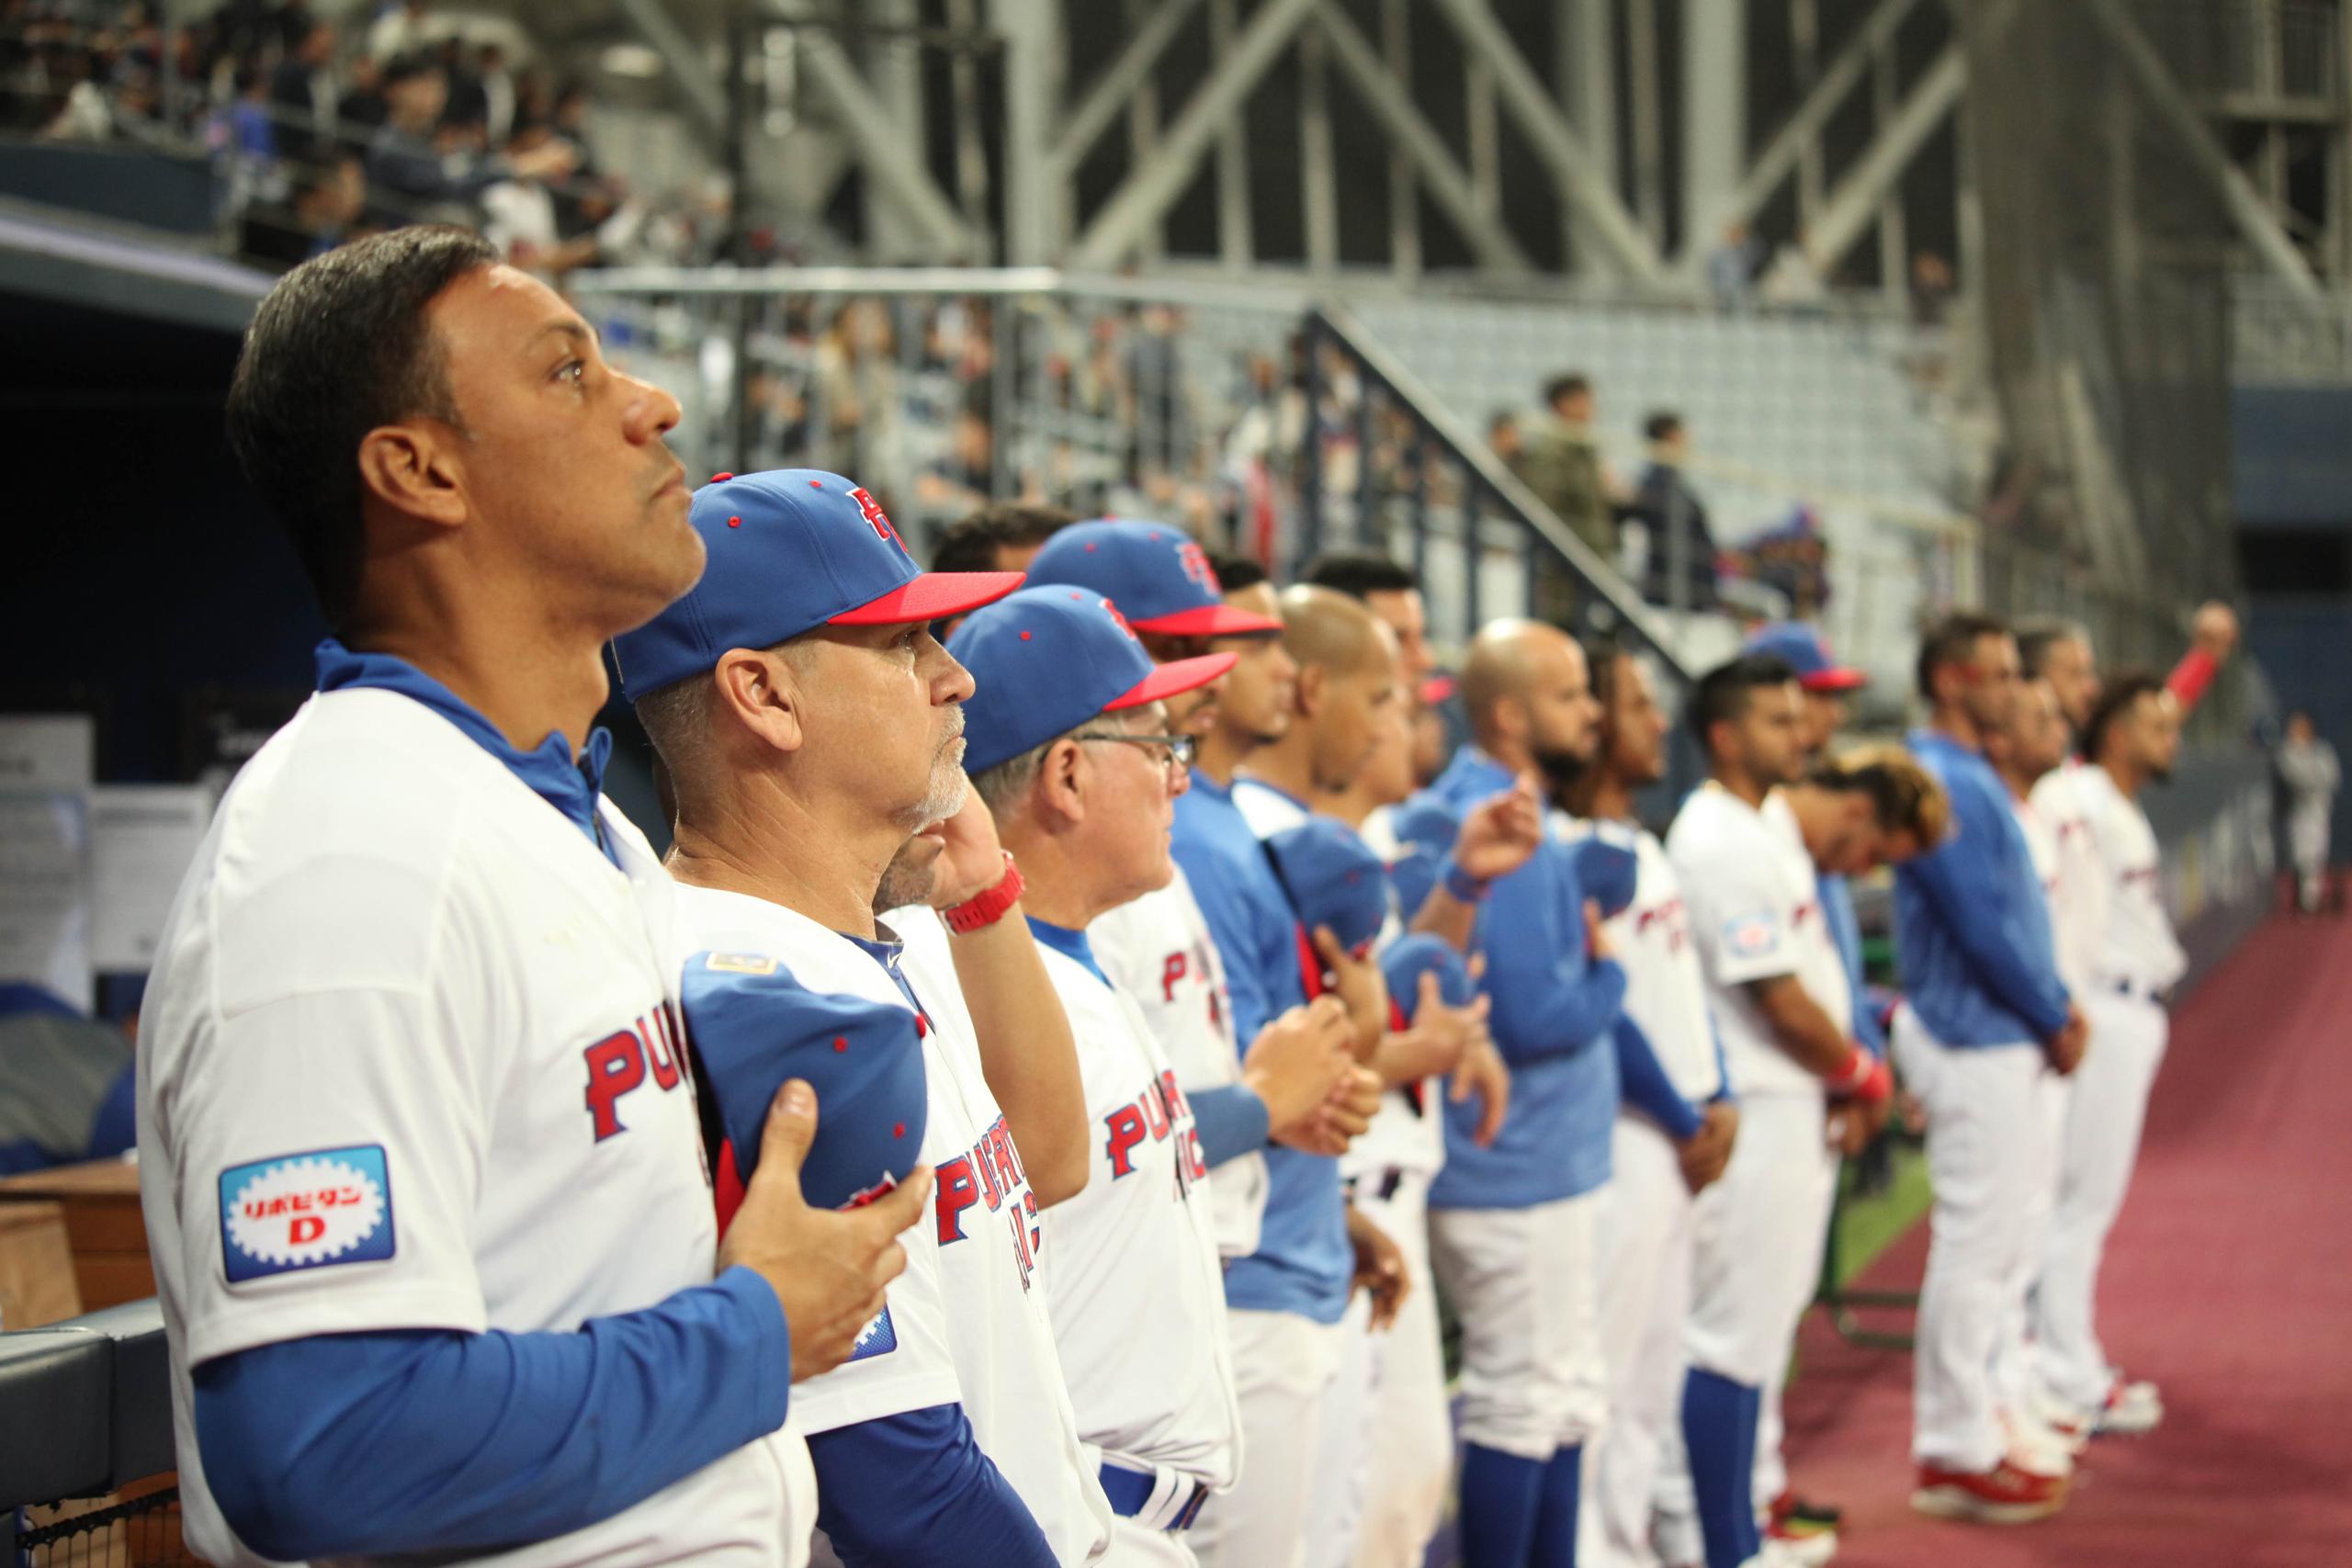 El Equipo Nacional de Béisbol de Puerto Rico tendrá en marzo el Preolímpico de América, donde se reparte un boleto a las Olimpiadas y dos a un repachaje mundial.